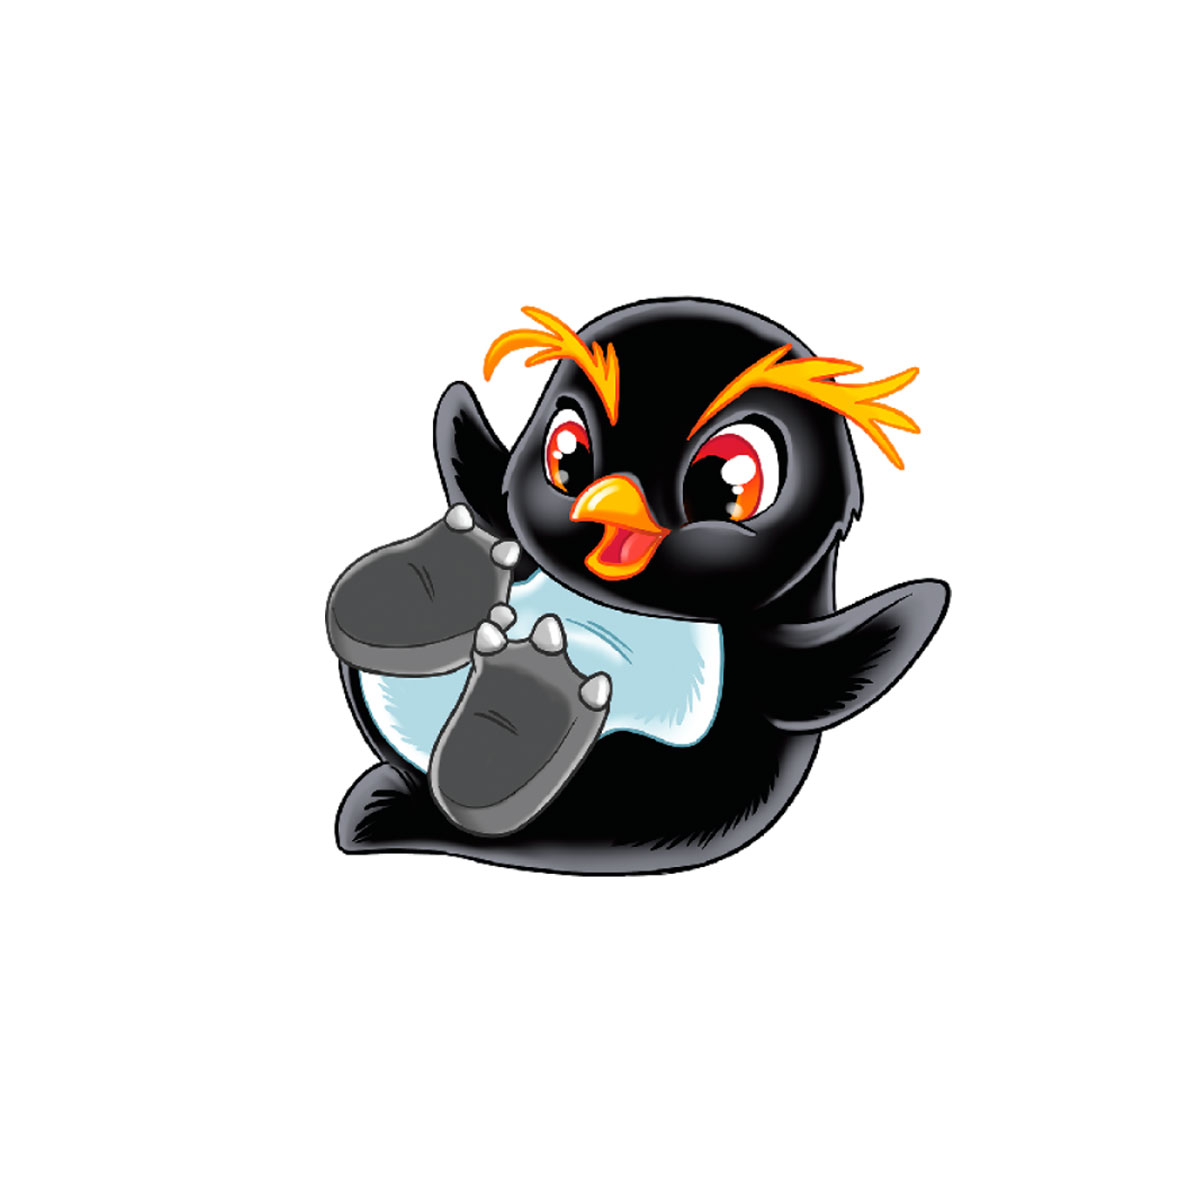 Іграшка, що росте в яйці #sbabam Penguin Еggs Пінгвіни та друзі, в асортименті (T049-2019) - фото 4